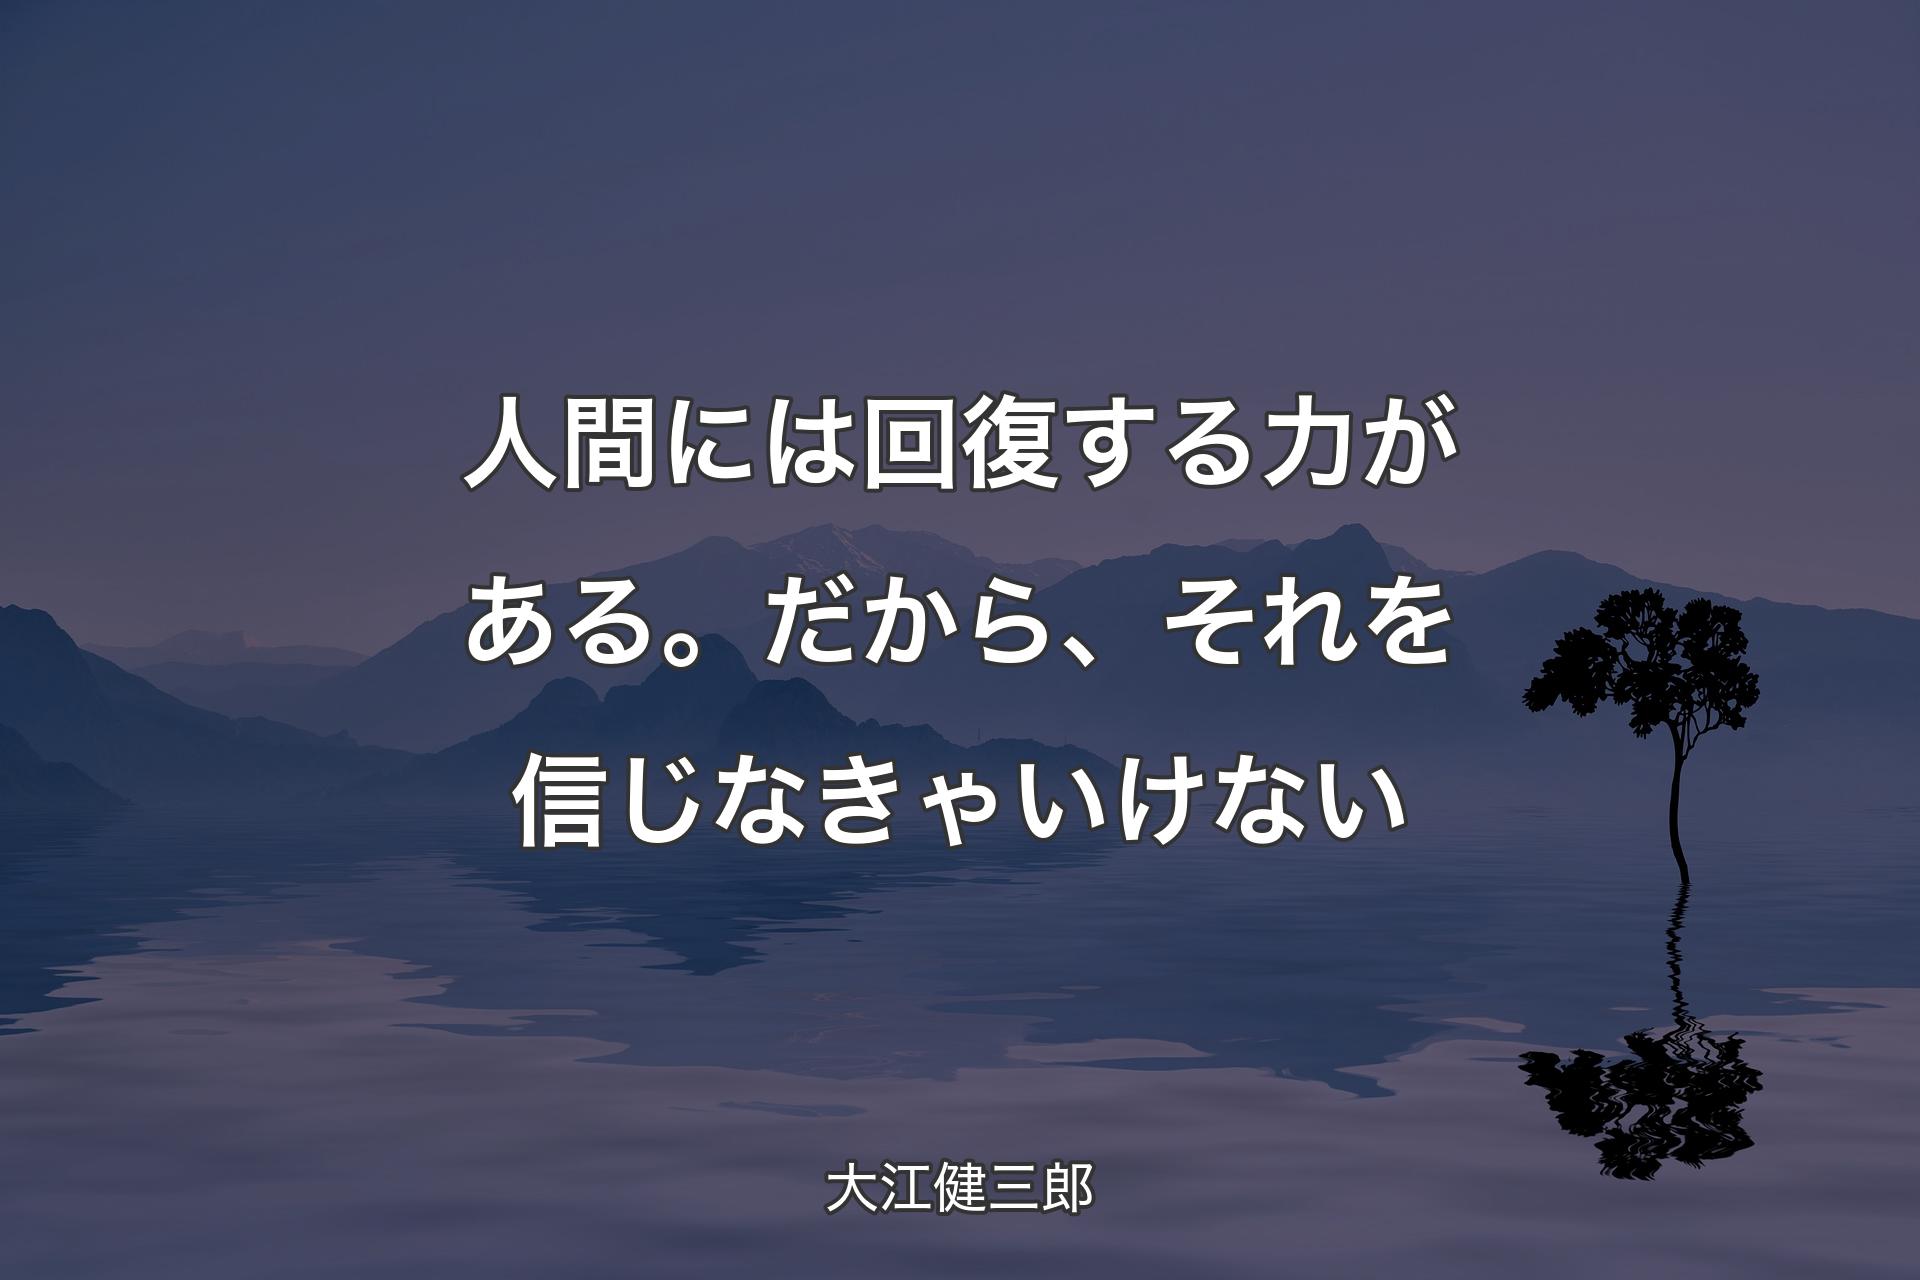 【�背景4】人間には回復する力がある。だから、それを信じなきゃいけない - 大江健三郎